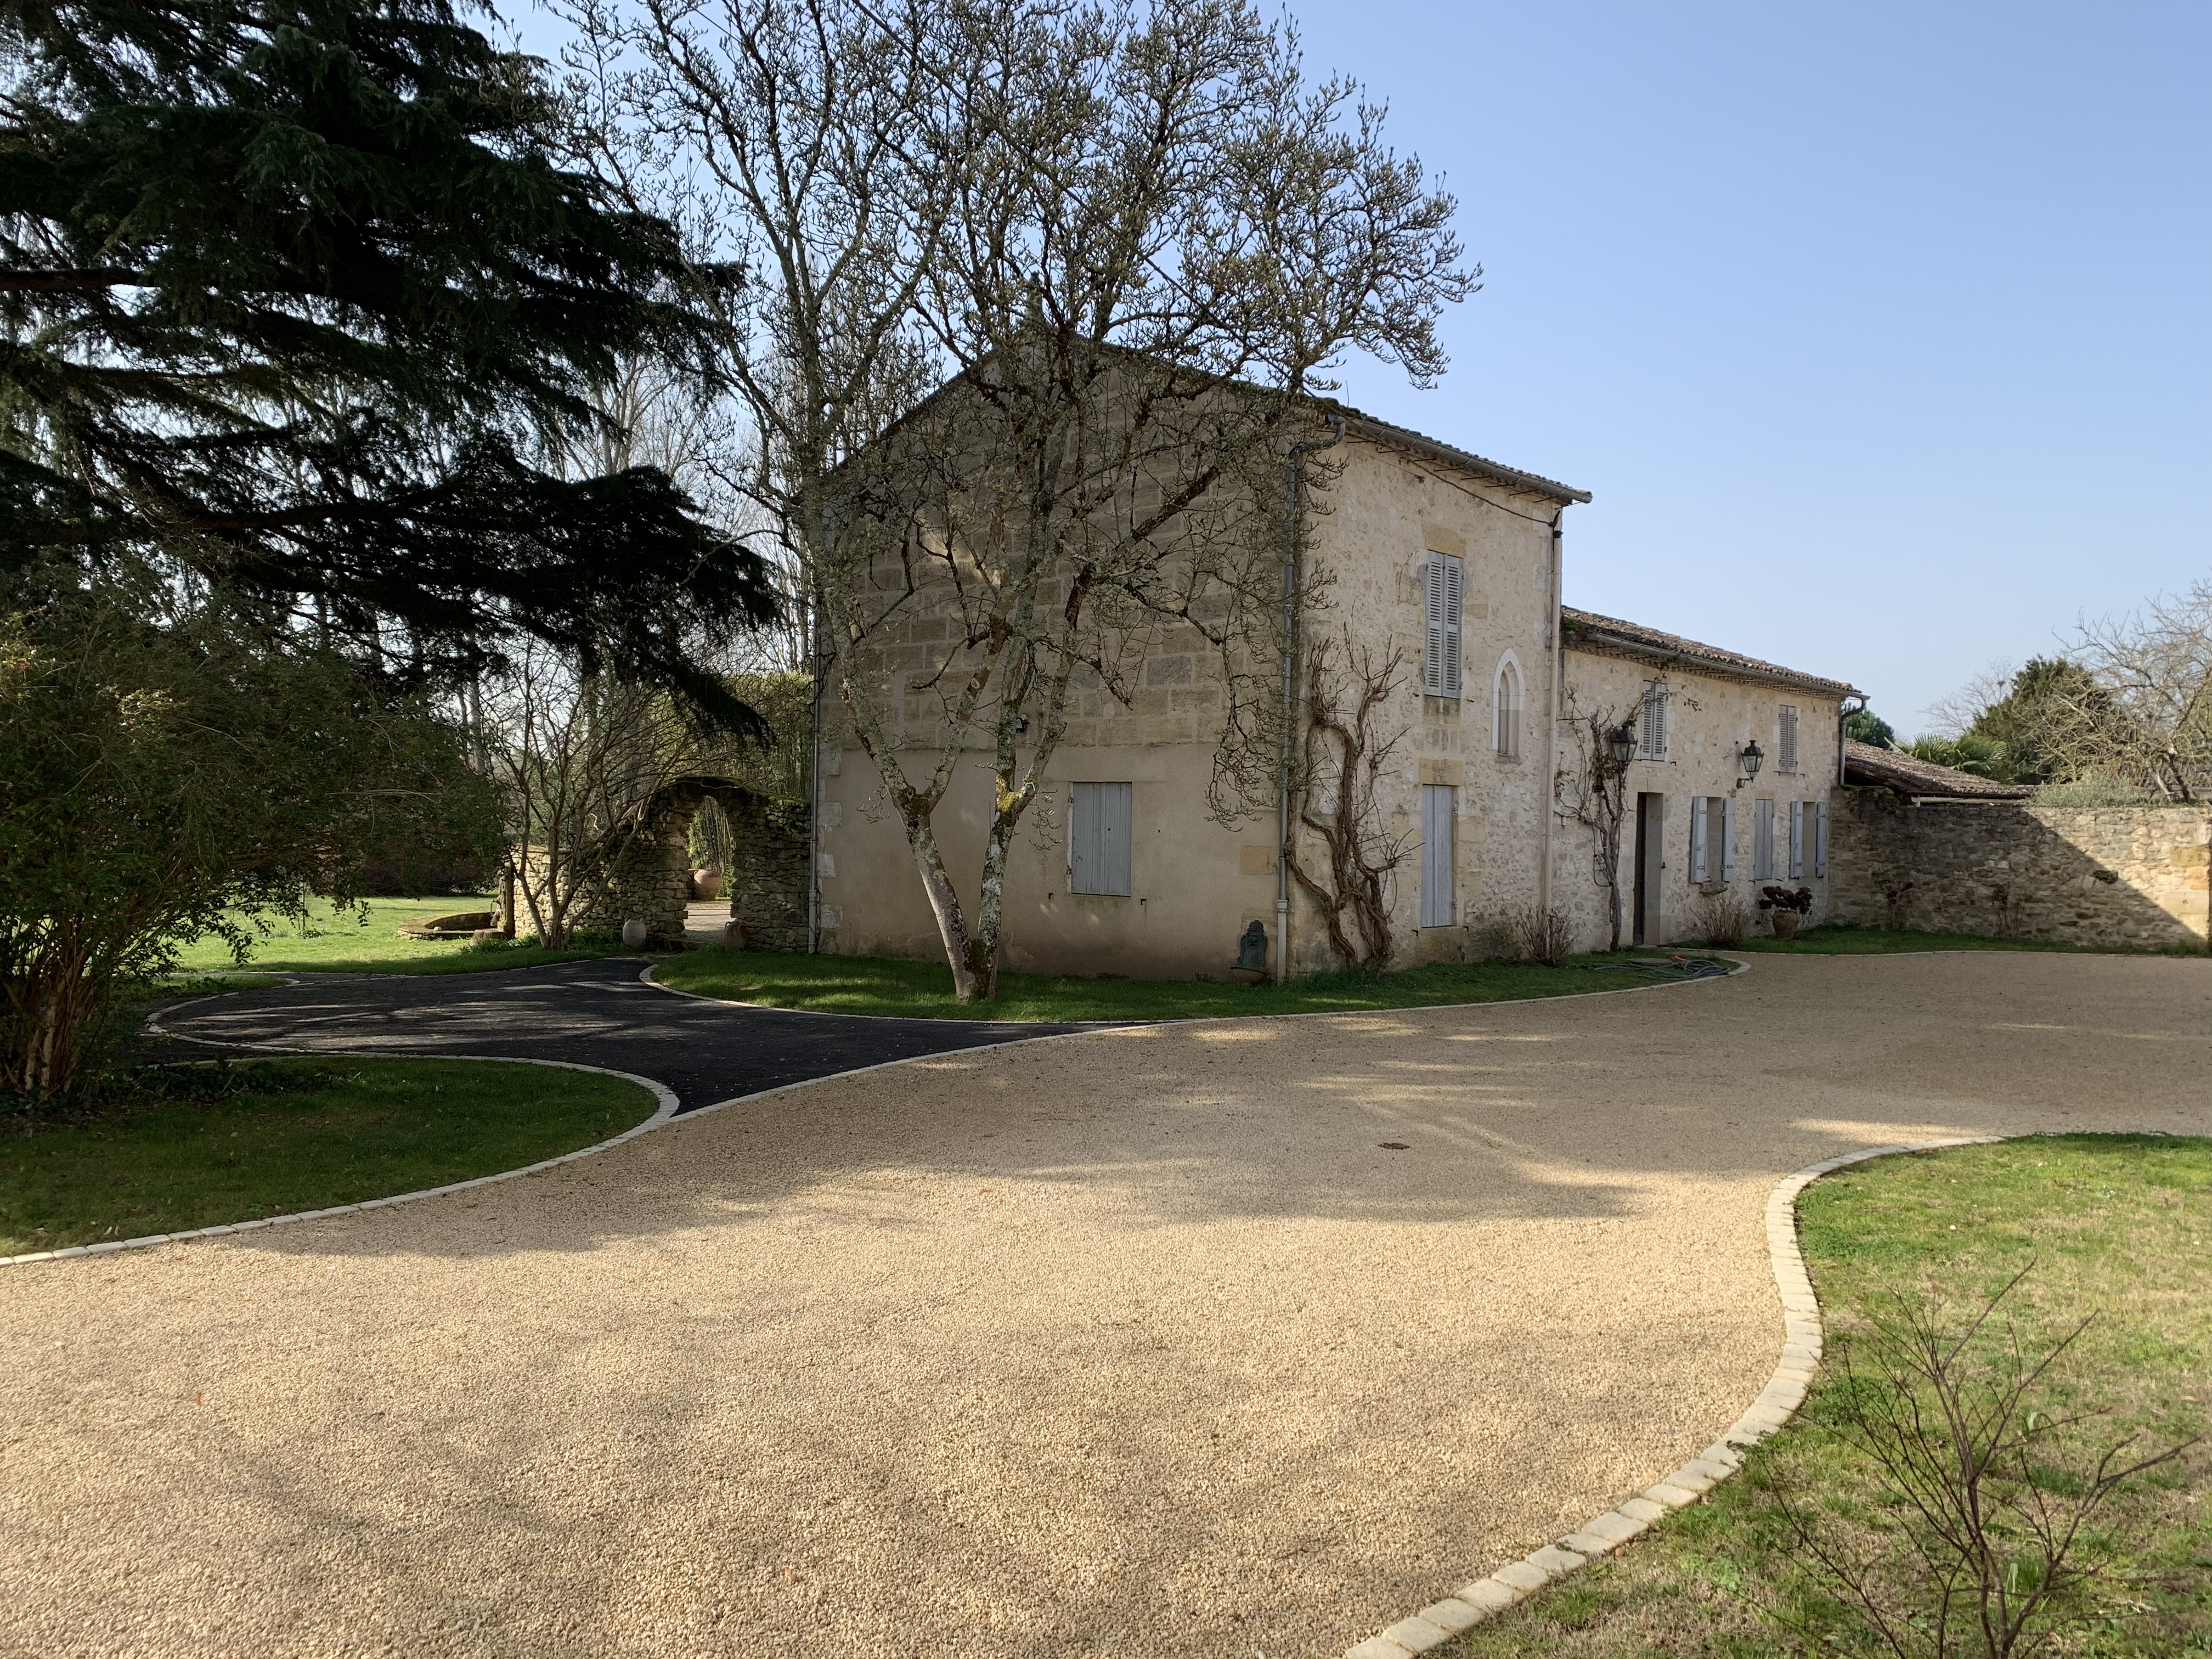 Cration cour en Gravistar et pav La Couture - Dordogne ralise le 16/05/2019